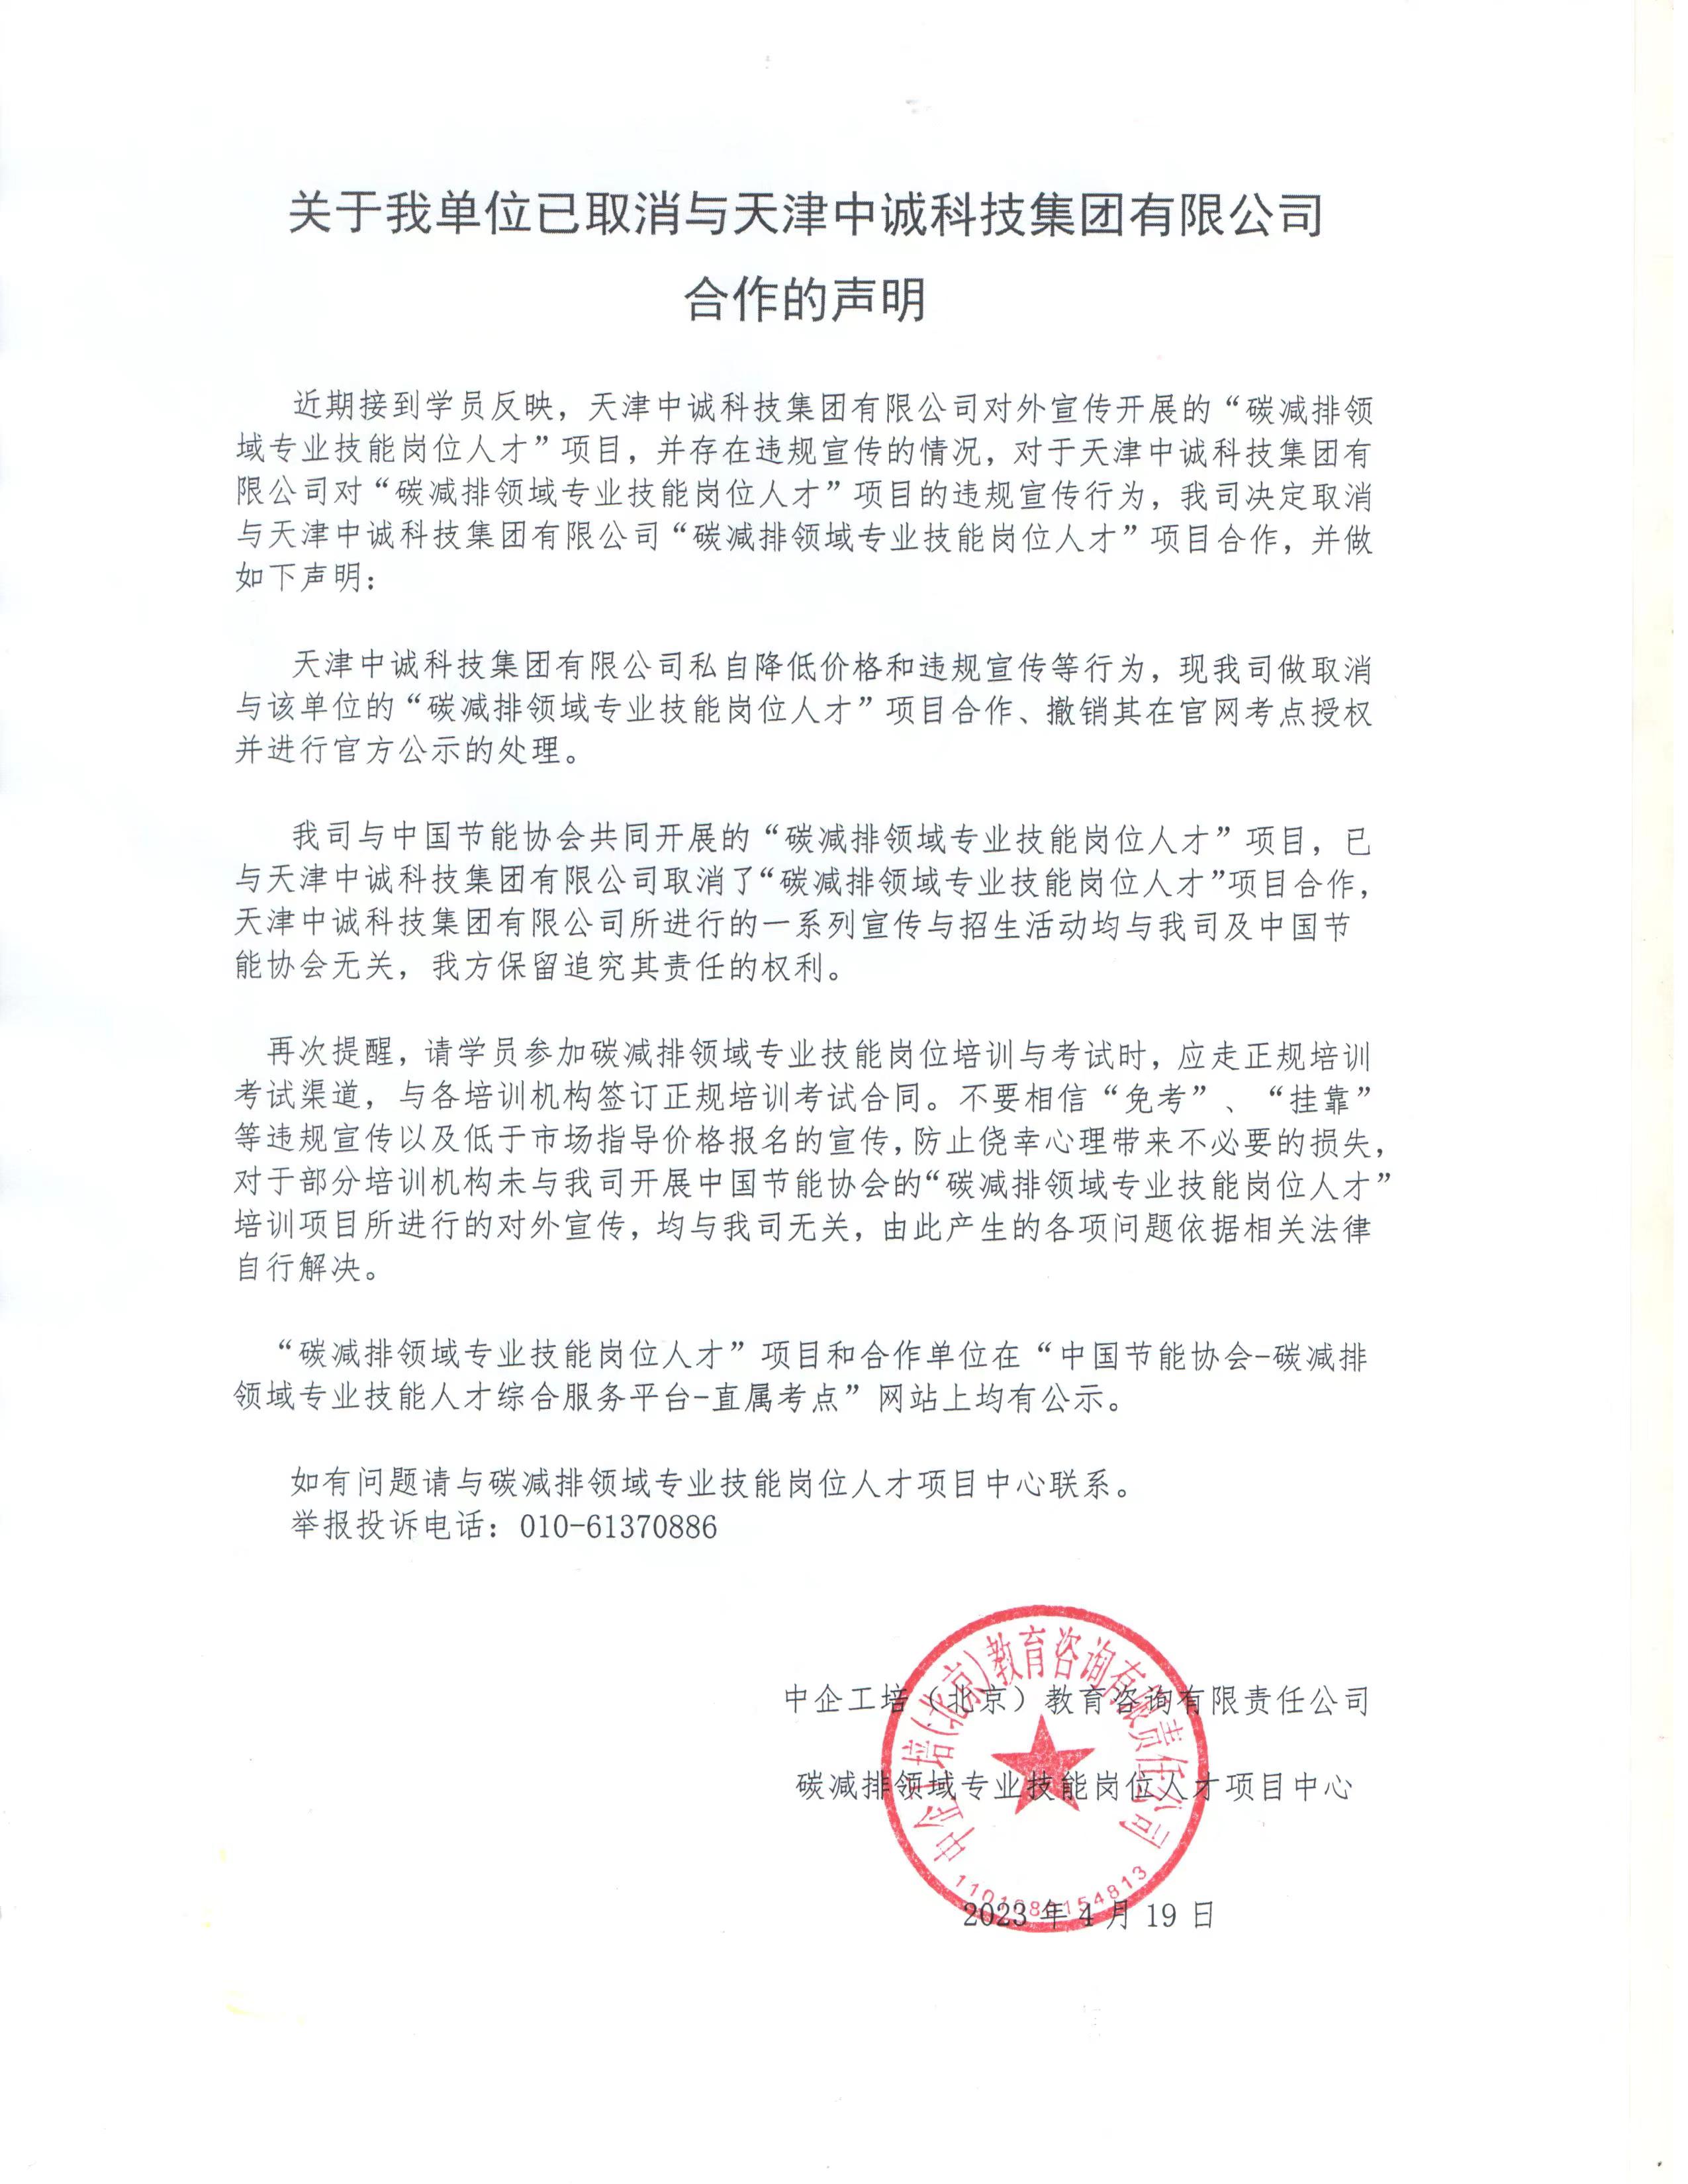 关于我单位已取消与天津中诚科技集团有限公司合作的声明.jpg